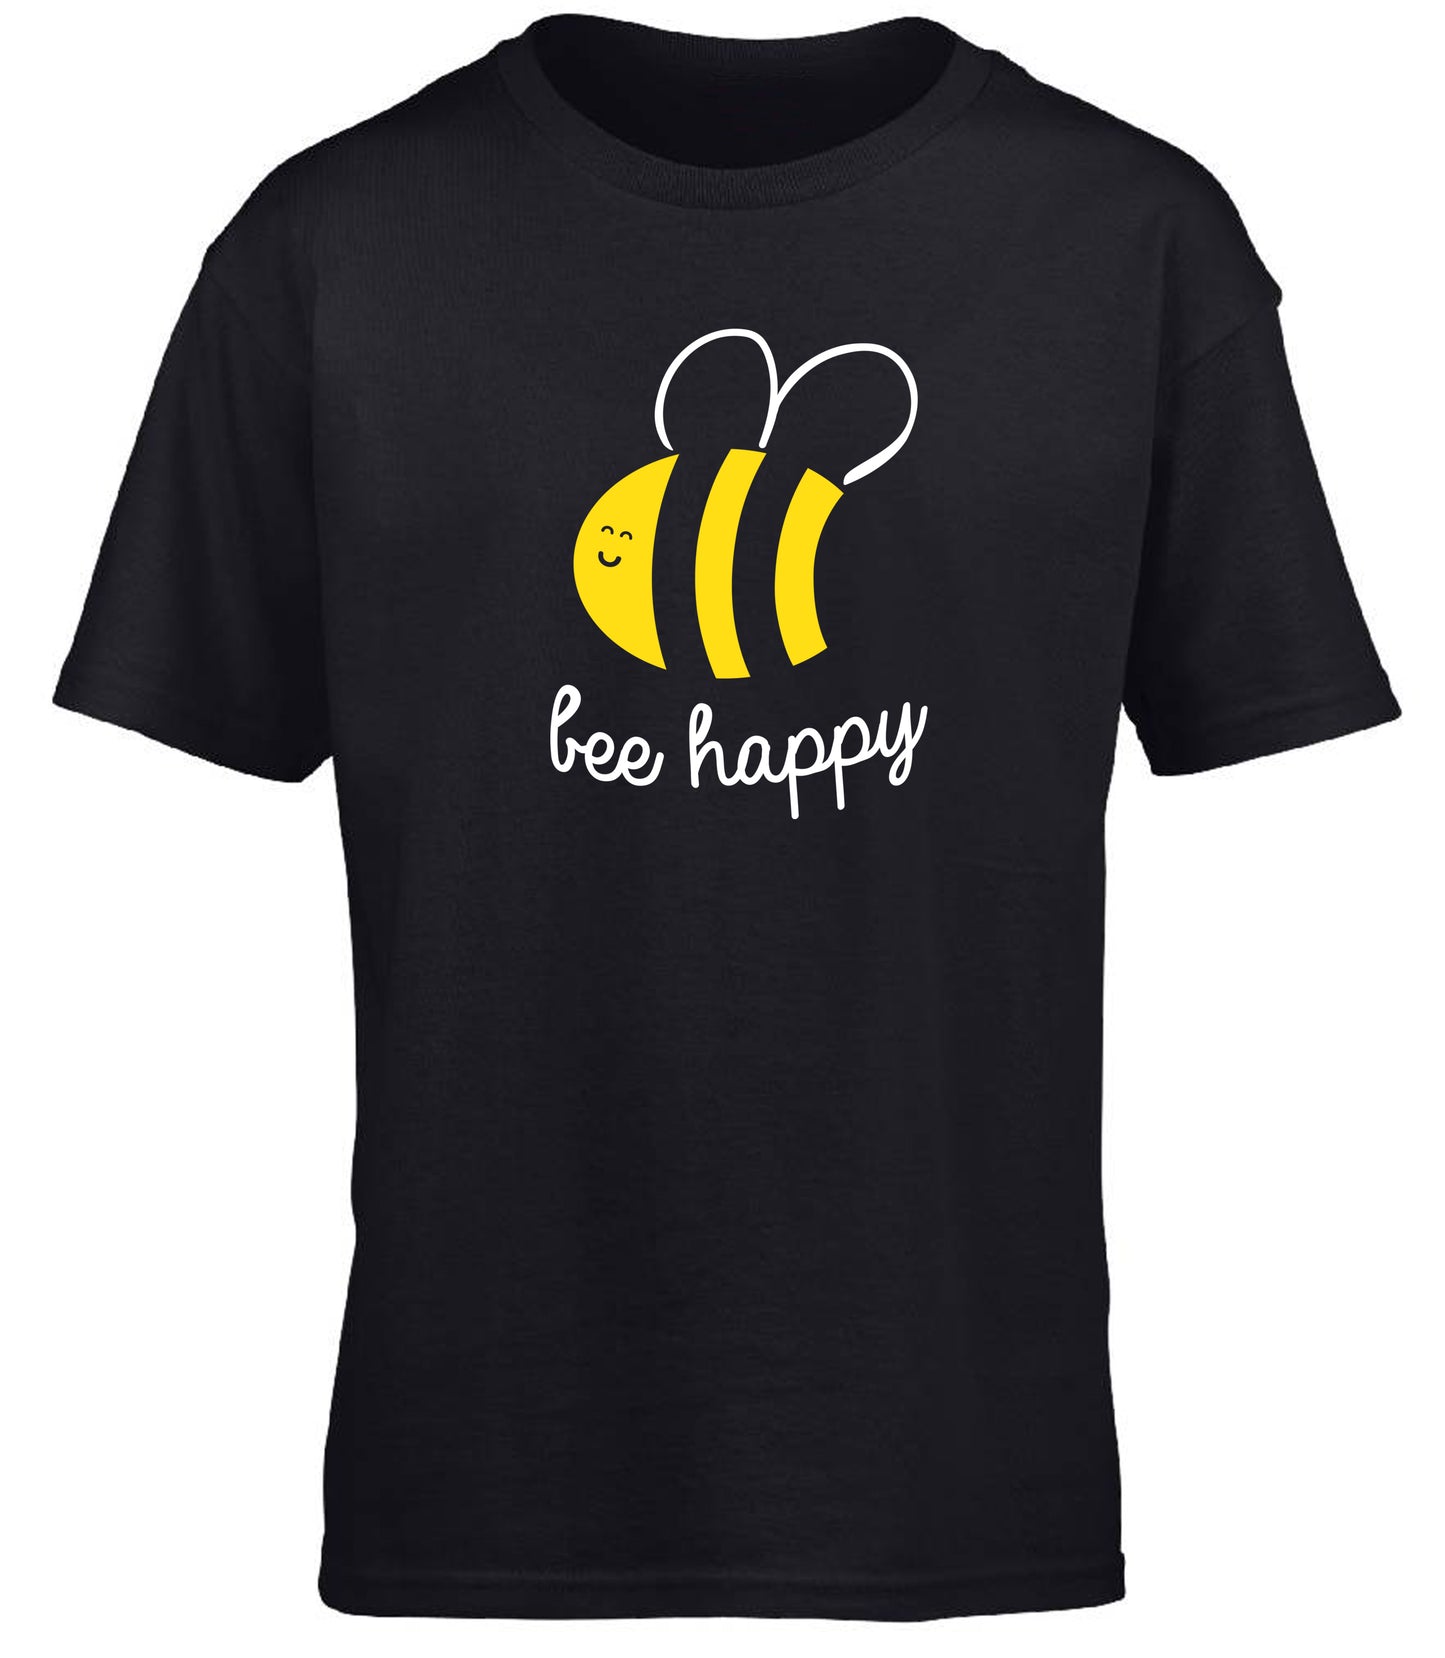 Bee Happy children's T-shirt